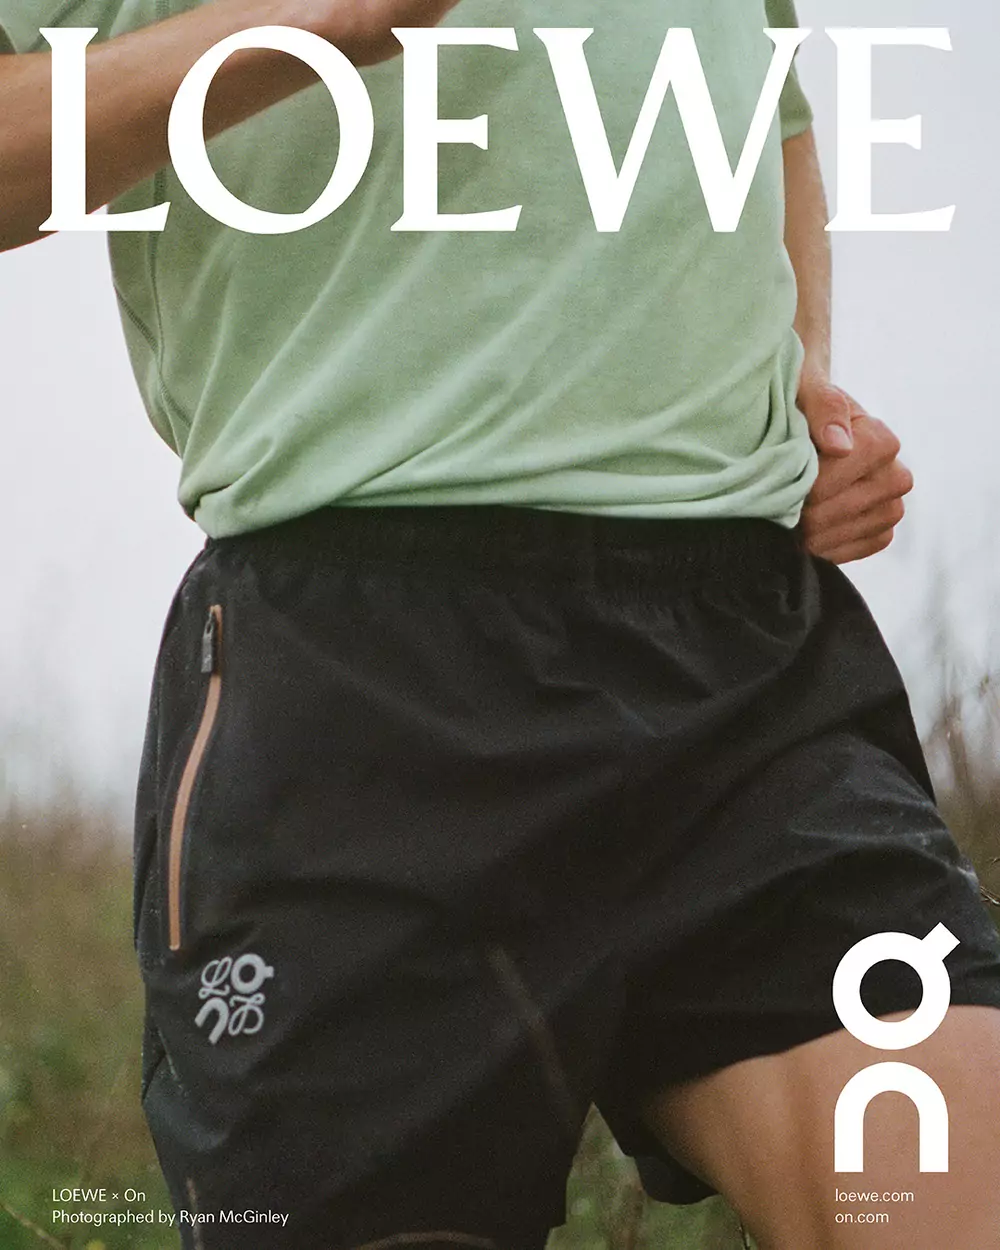 LOEWE hợp tác với On ra mắt bộ sưu tập thể thao mới nhất 1